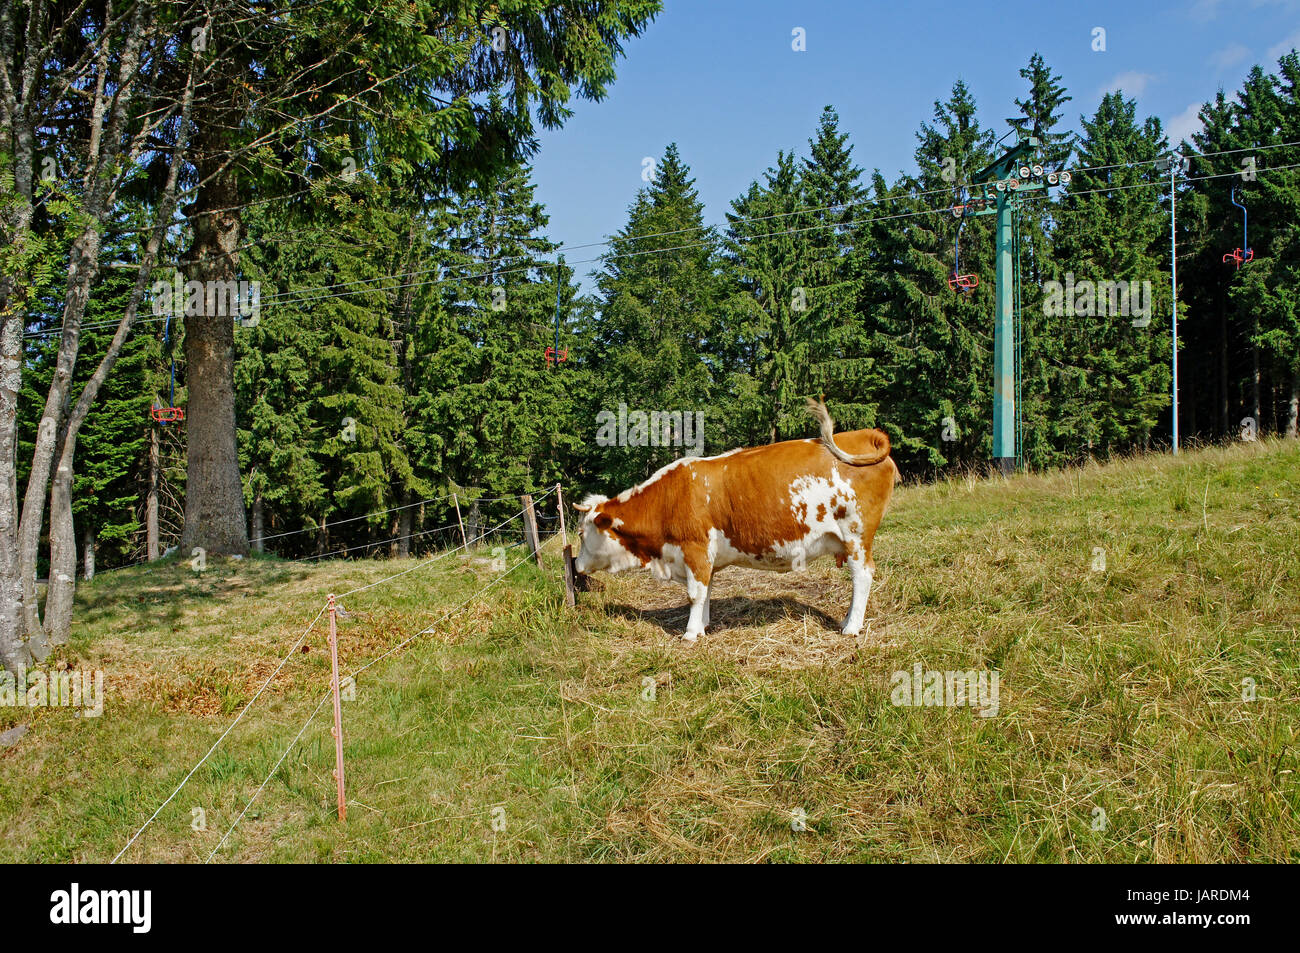 Eine braun-weisse Kuh auf einer Weide, Wiederkäuer; Wiese von Wäldern umgeben A brown-white cow on a pasture, ruminant; meadow surrounded by forest Stock Photo